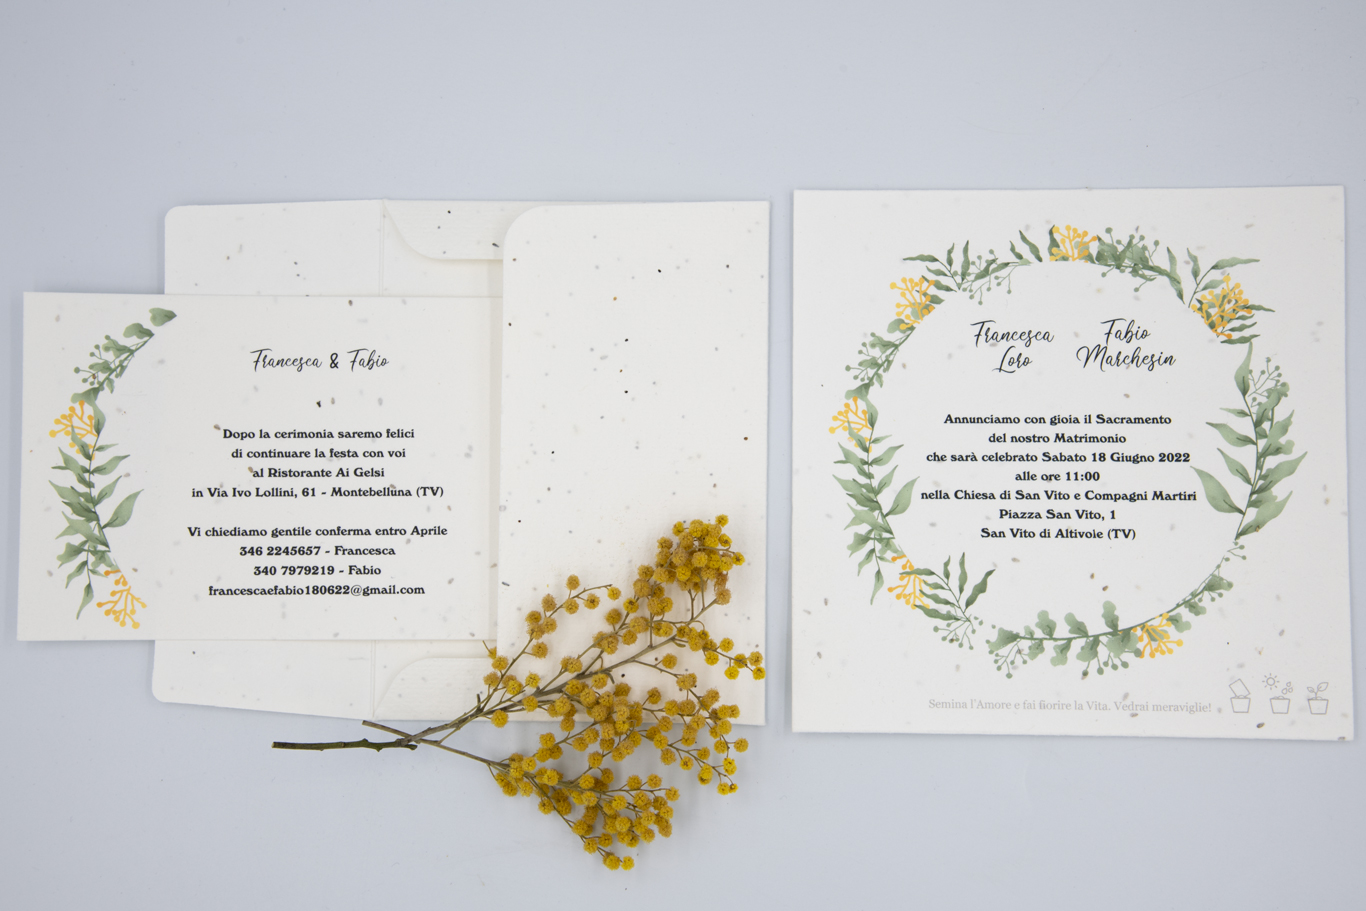 Invitaciones de boda plantables en papel con semillas.